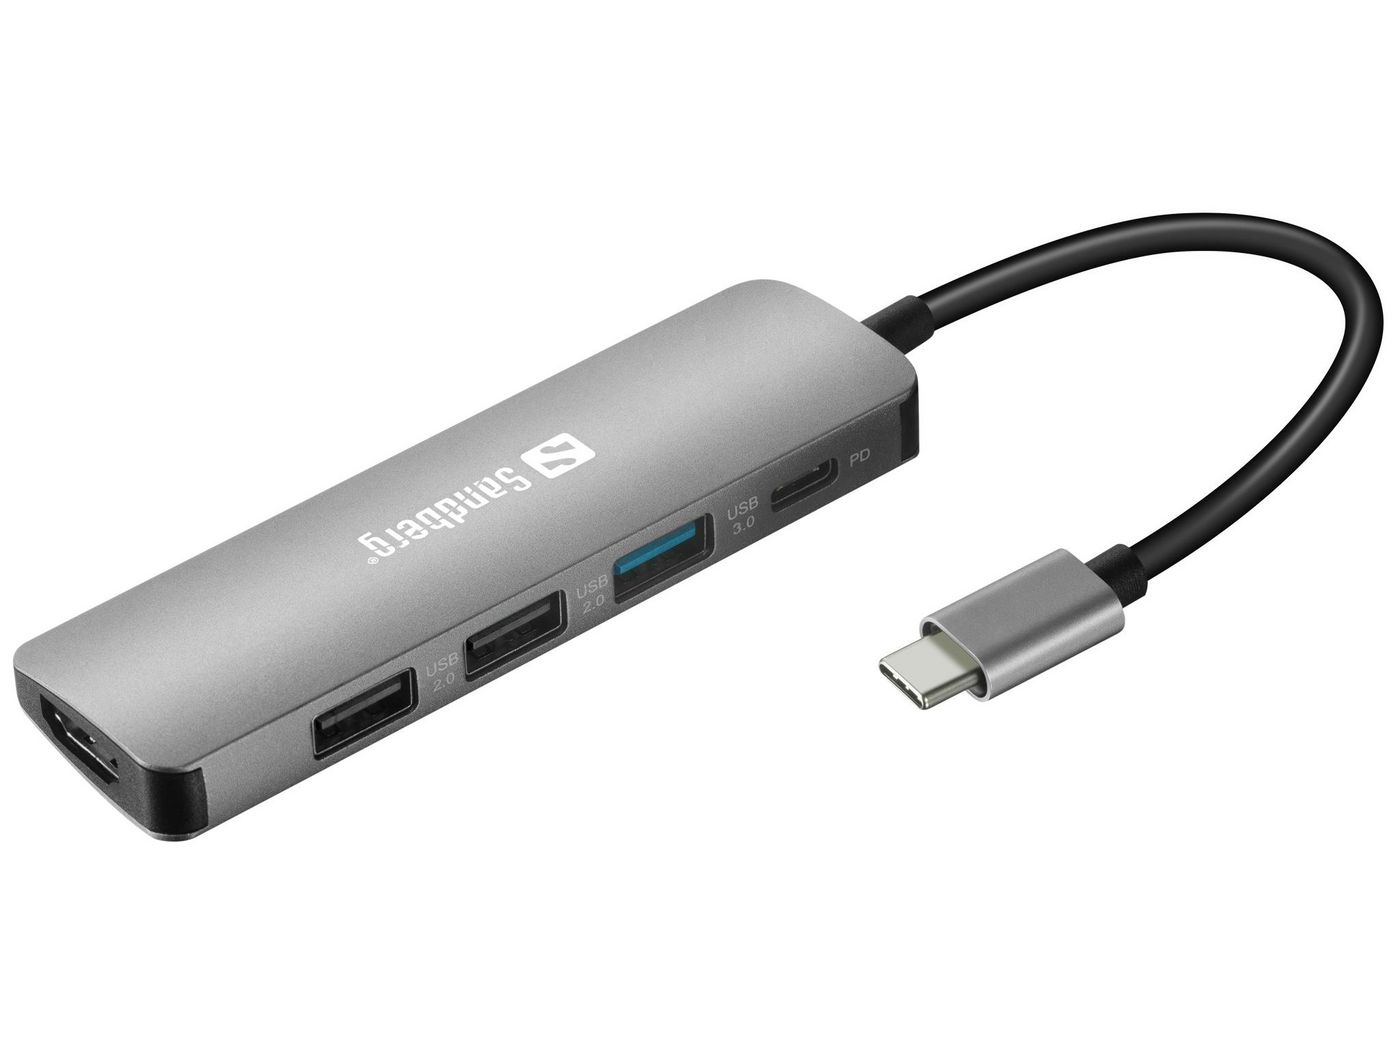 USB-C Dock - HDMI / USB-C PD / 2x USB 3.0 A - 100W USB Power Delivery